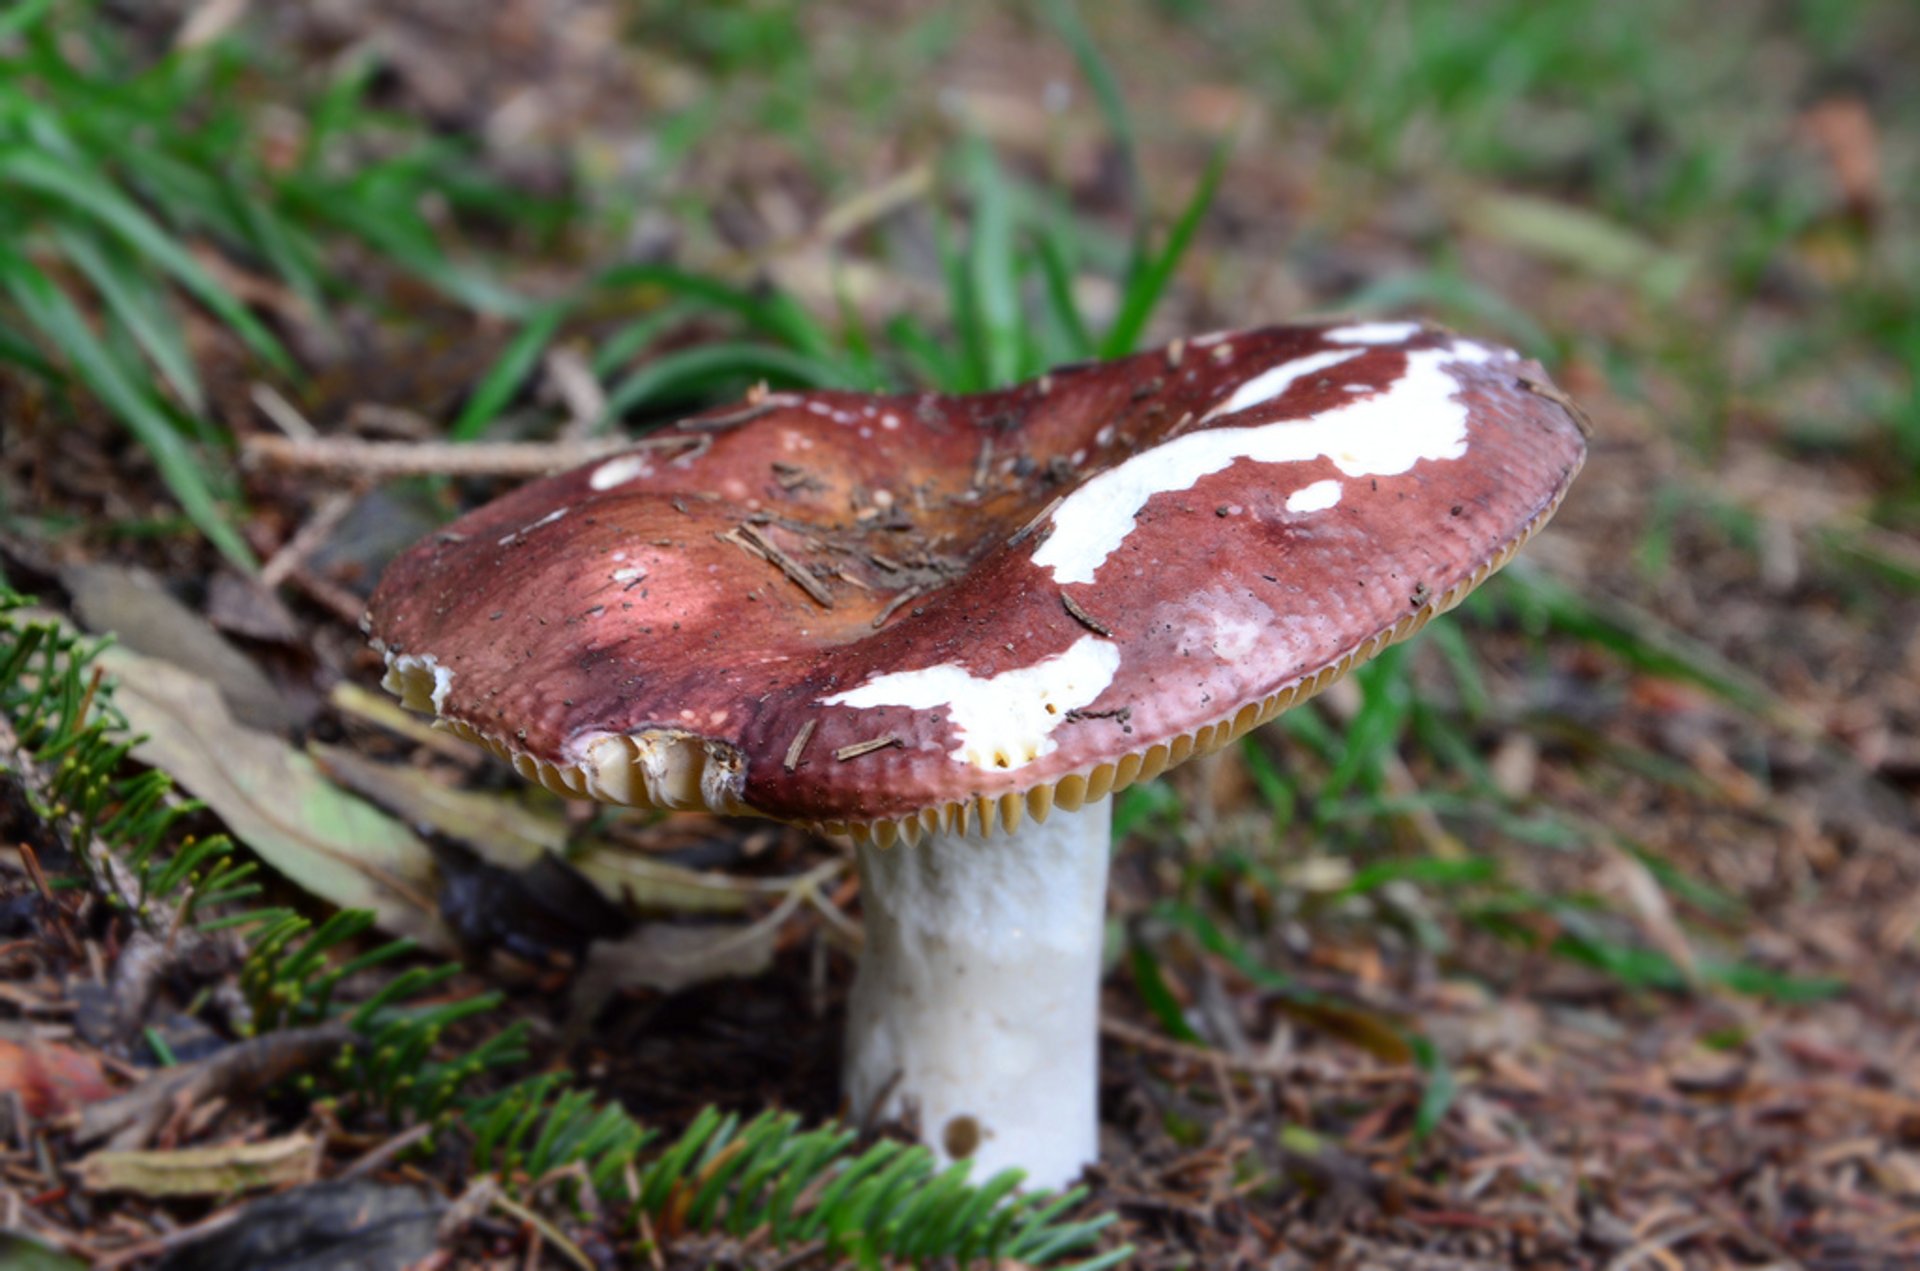 Wild Mushroom Season